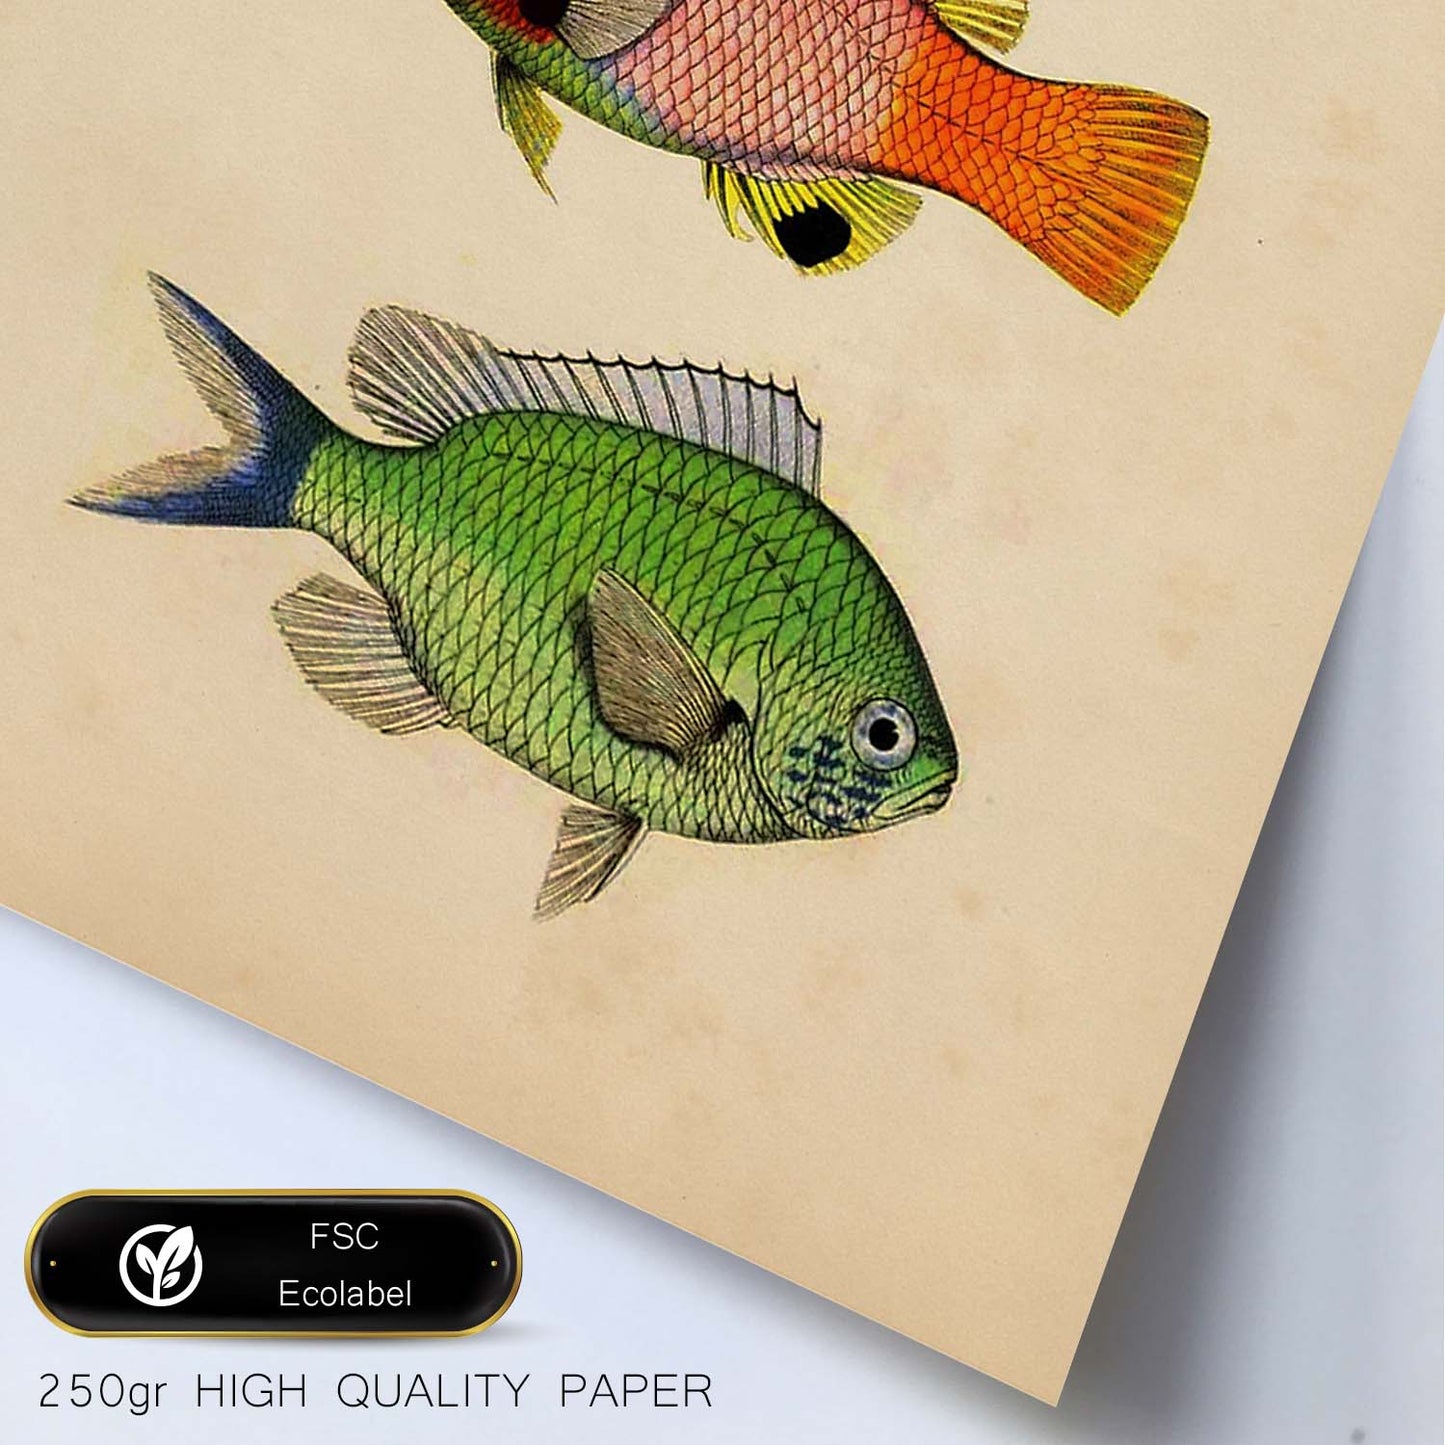 Lámina de tres peces naranja, negro rojo, verde en , fondo papel vintage.-Artwork-Nacnic-Nacnic Estudio SL